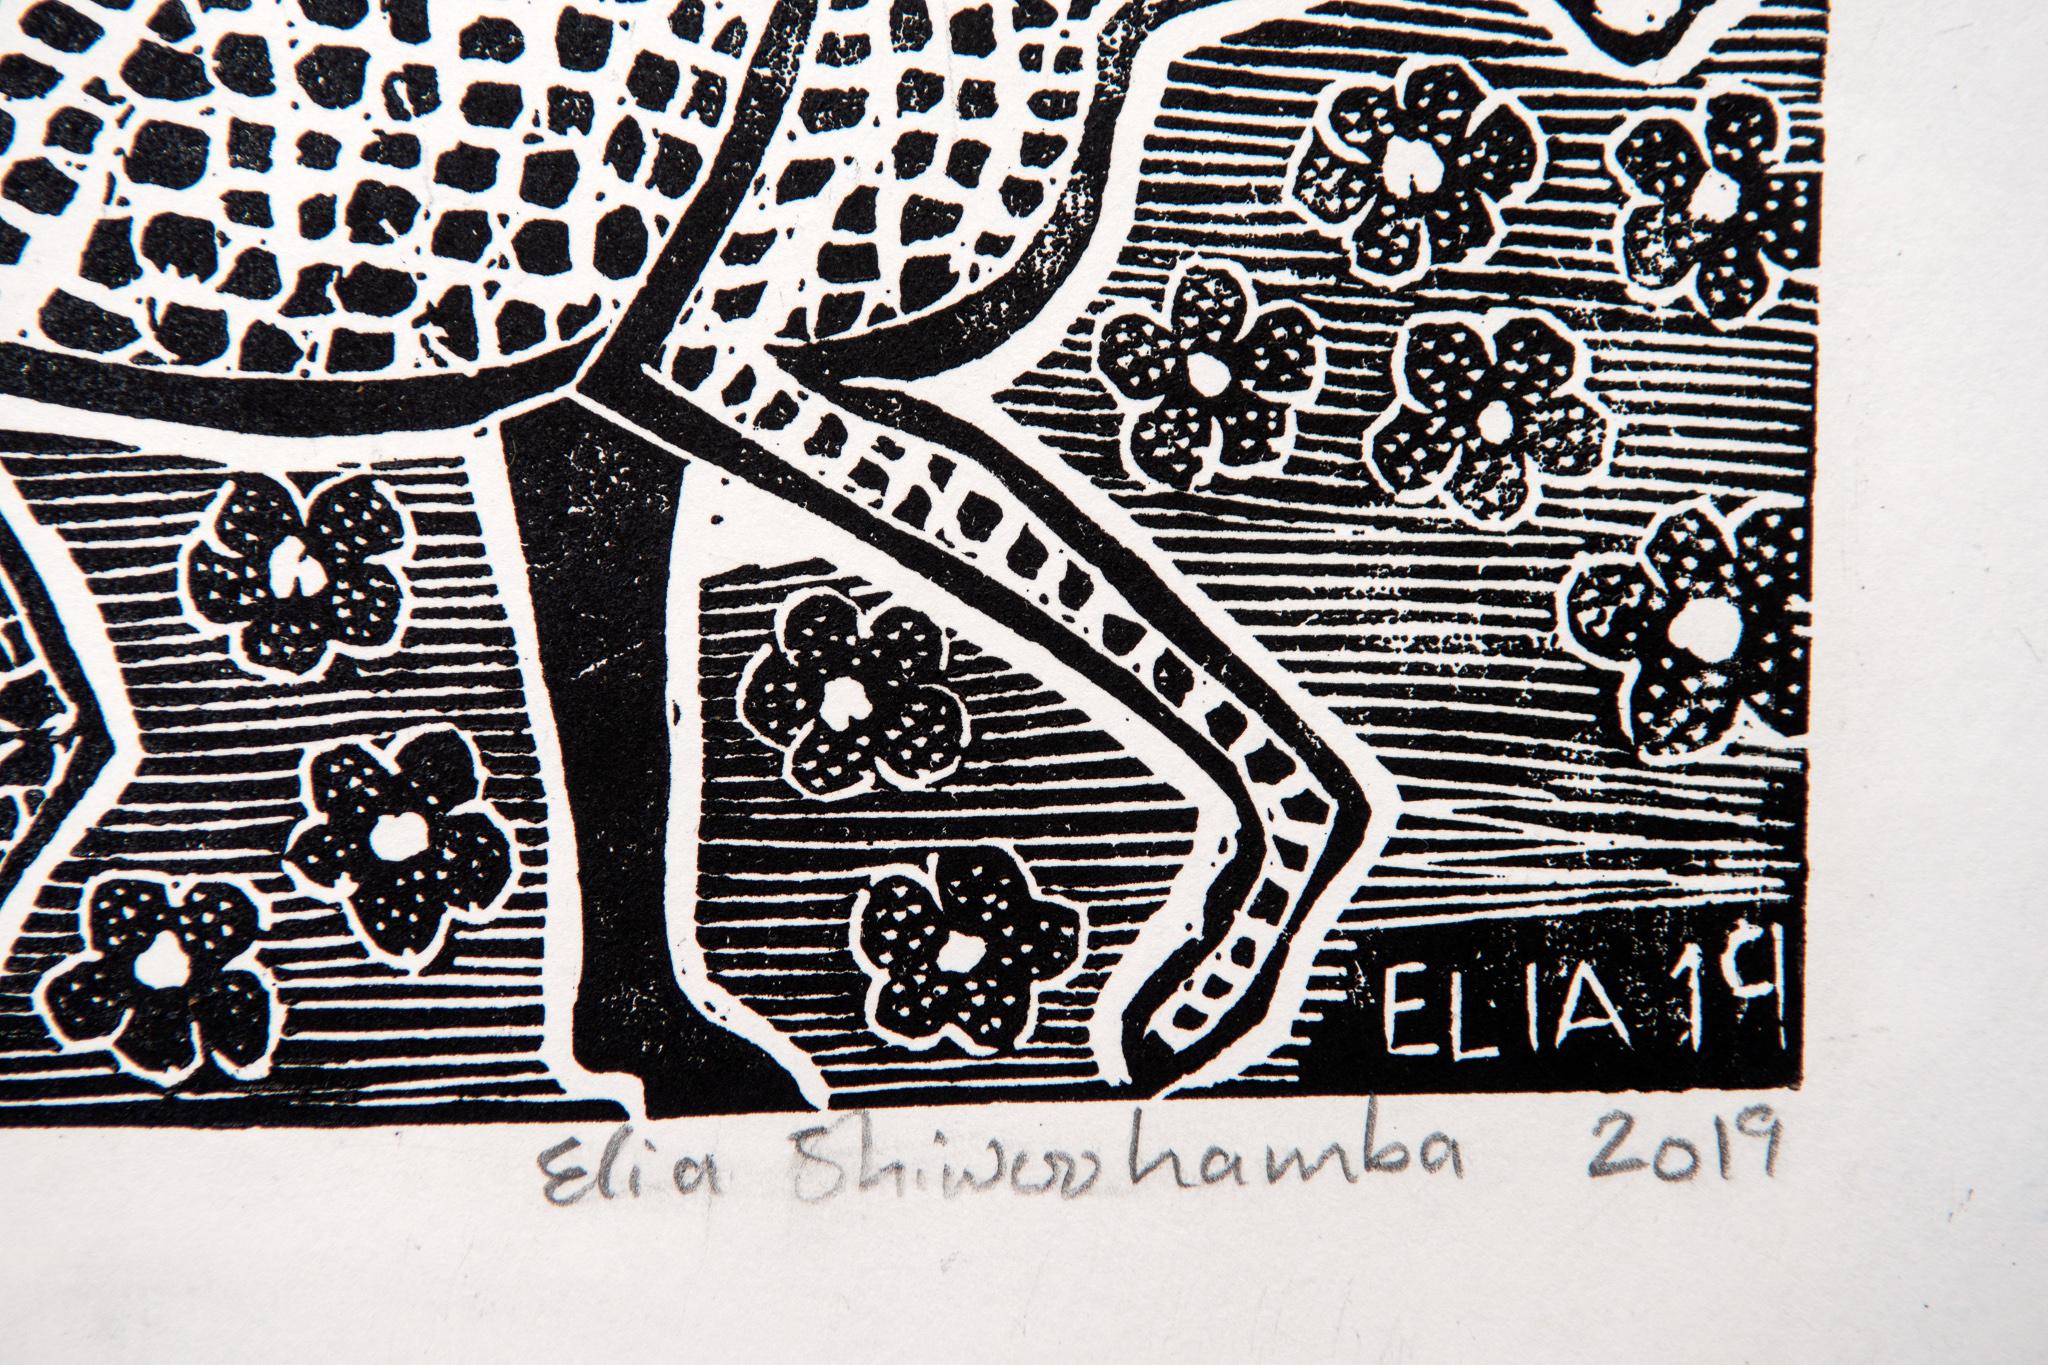 Die Geparden sind auf dem Weg zur Jagd, Elia Shiwoohamba, Linoleum-Blockdruck im Angebot 3